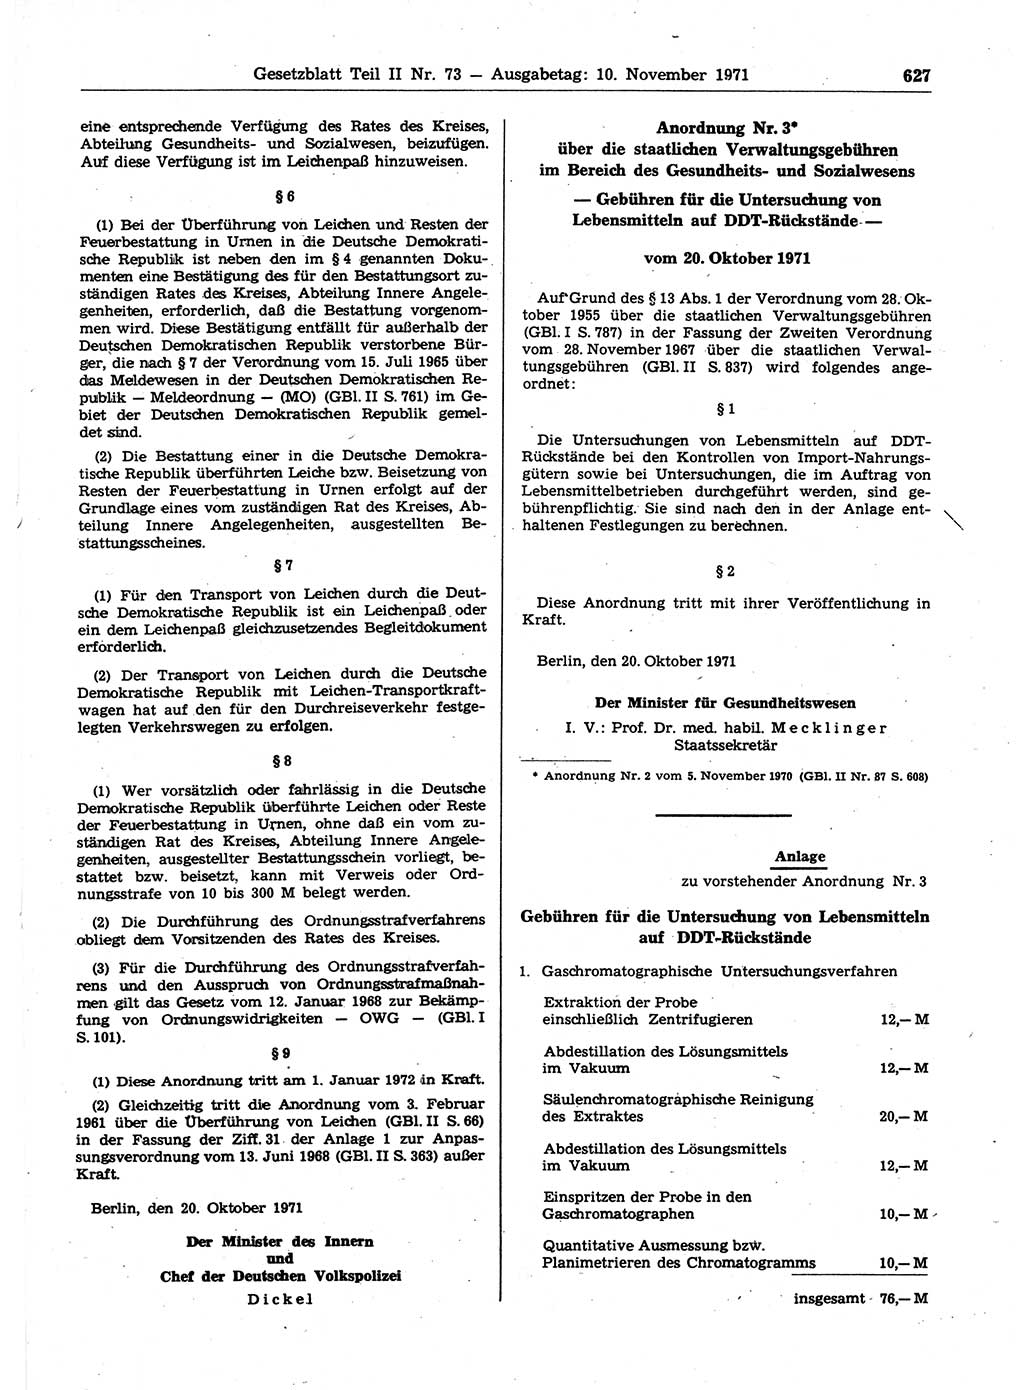 Gesetzblatt (GBl.) der Deutschen Demokratischen Republik (DDR) Teil ⅠⅠ 1971, Seite 627 (GBl. DDR ⅠⅠ 1971, S. 627)